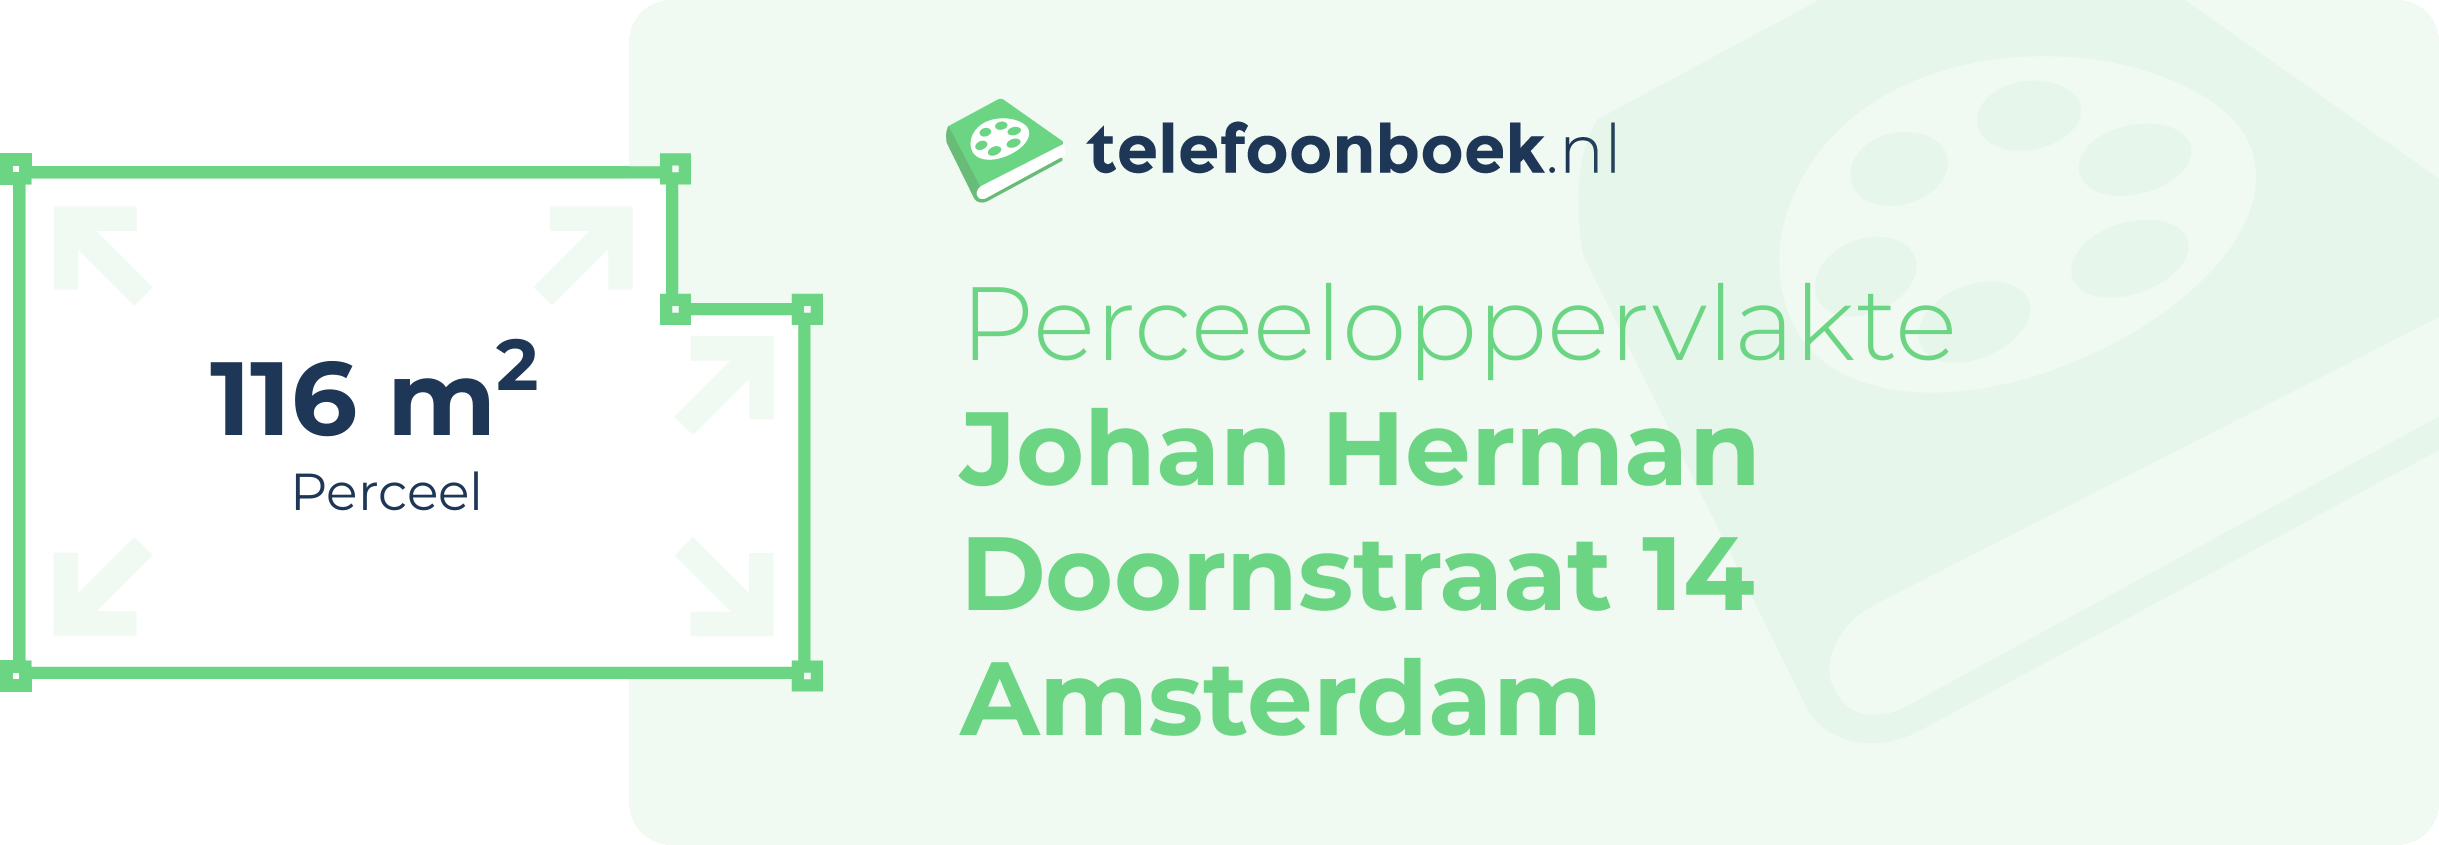 Perceeloppervlakte Johan Herman Doornstraat 14 Amsterdam